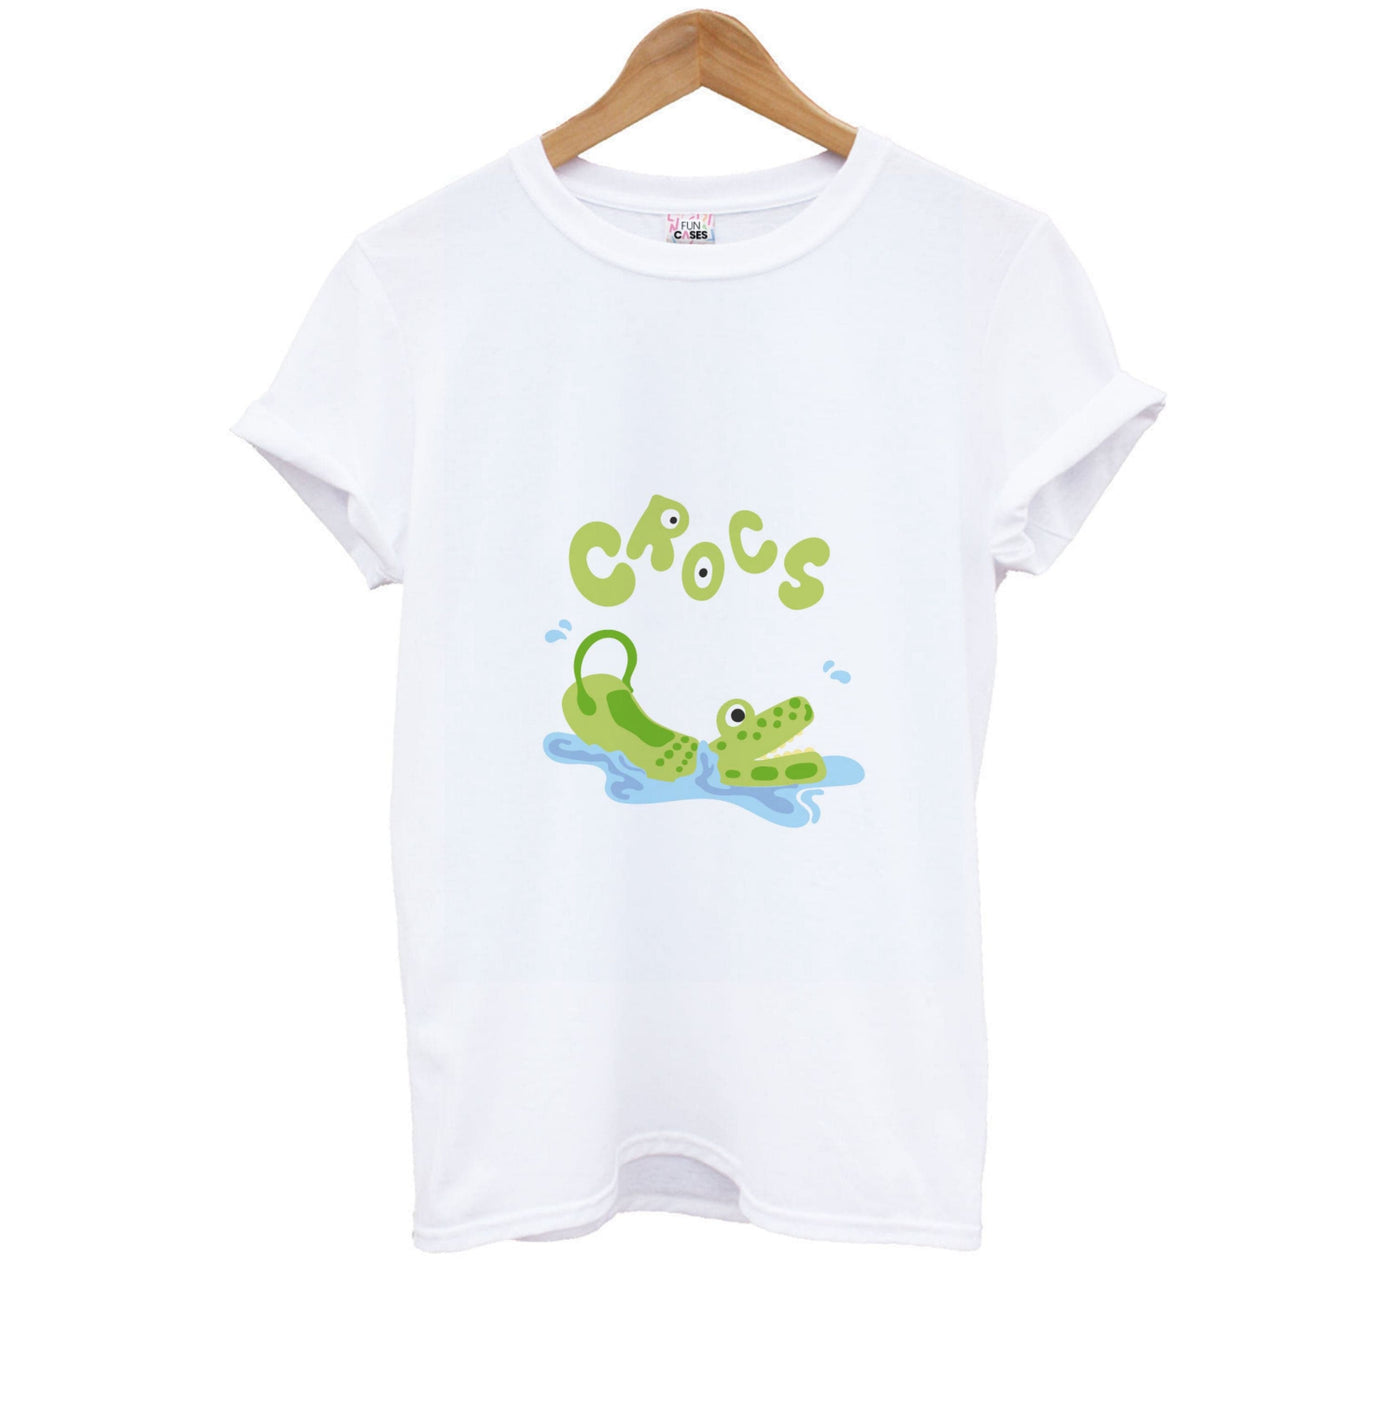 Crocadile - Crocs Kids T-Shirt